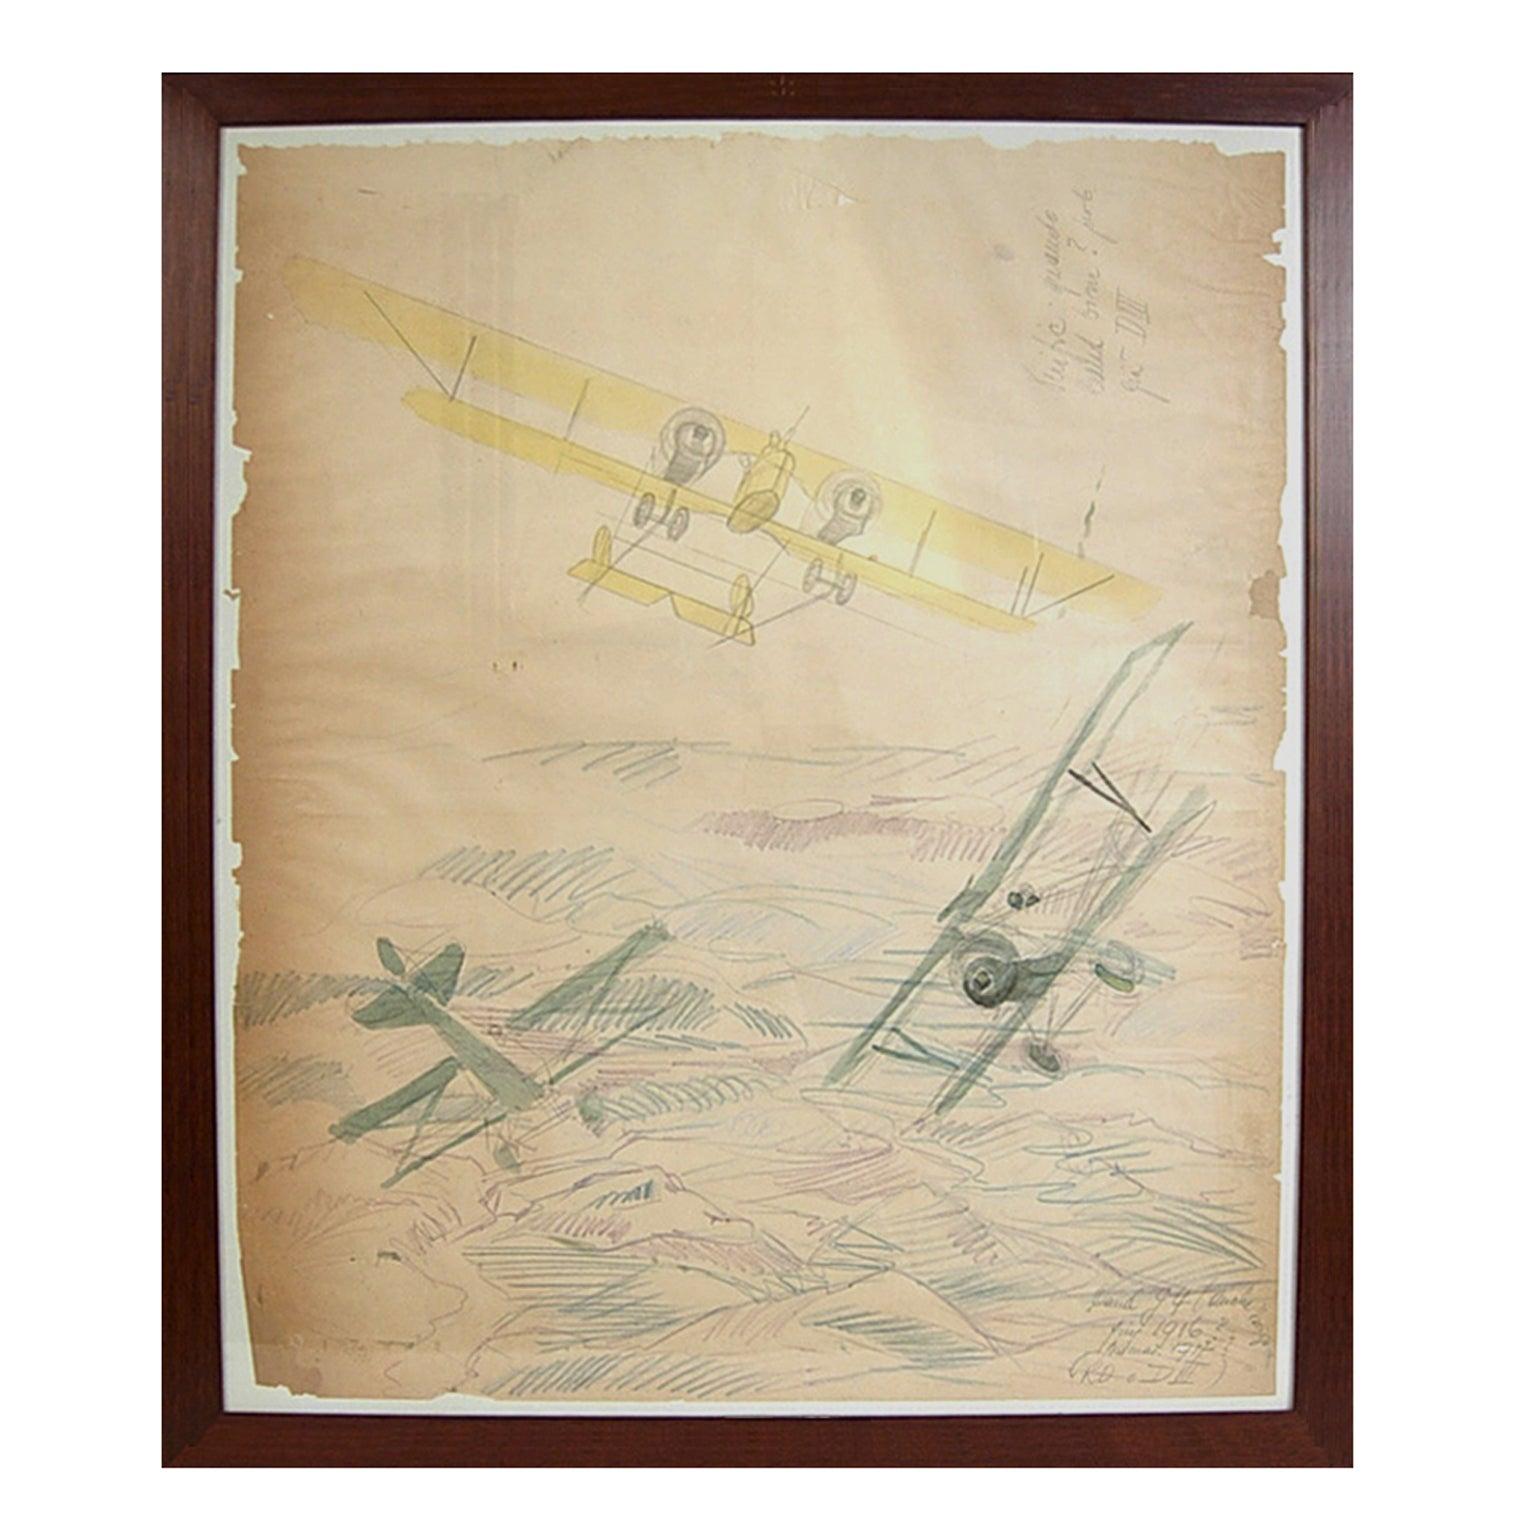 Wasserfarbene Luftfahrtszeichnung aus der Luftfahrt mit zwei Flugzeugen, Caudron G IV. WWI-Flugzeug, Zeichnung